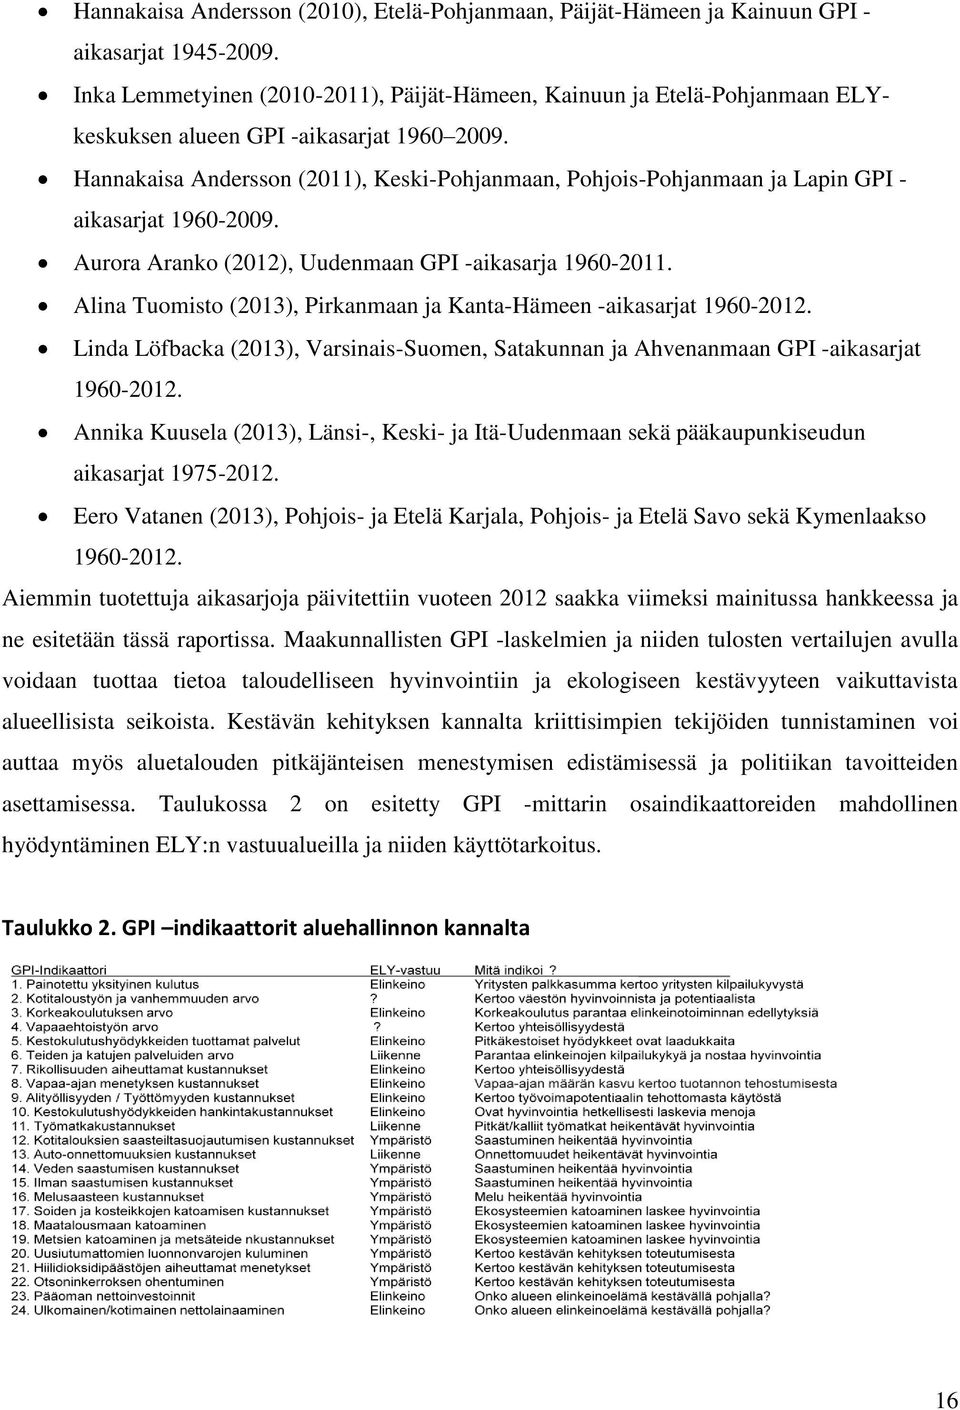 Hannakaisa Andersson (211), Keski-Pohjanmaan, Pohjois-Pohjanmaan ja Lapin GPI - aikasarjat 196-29. Aurora Aranko (212), Uudenmaan GPI -aikasarja 196-211.